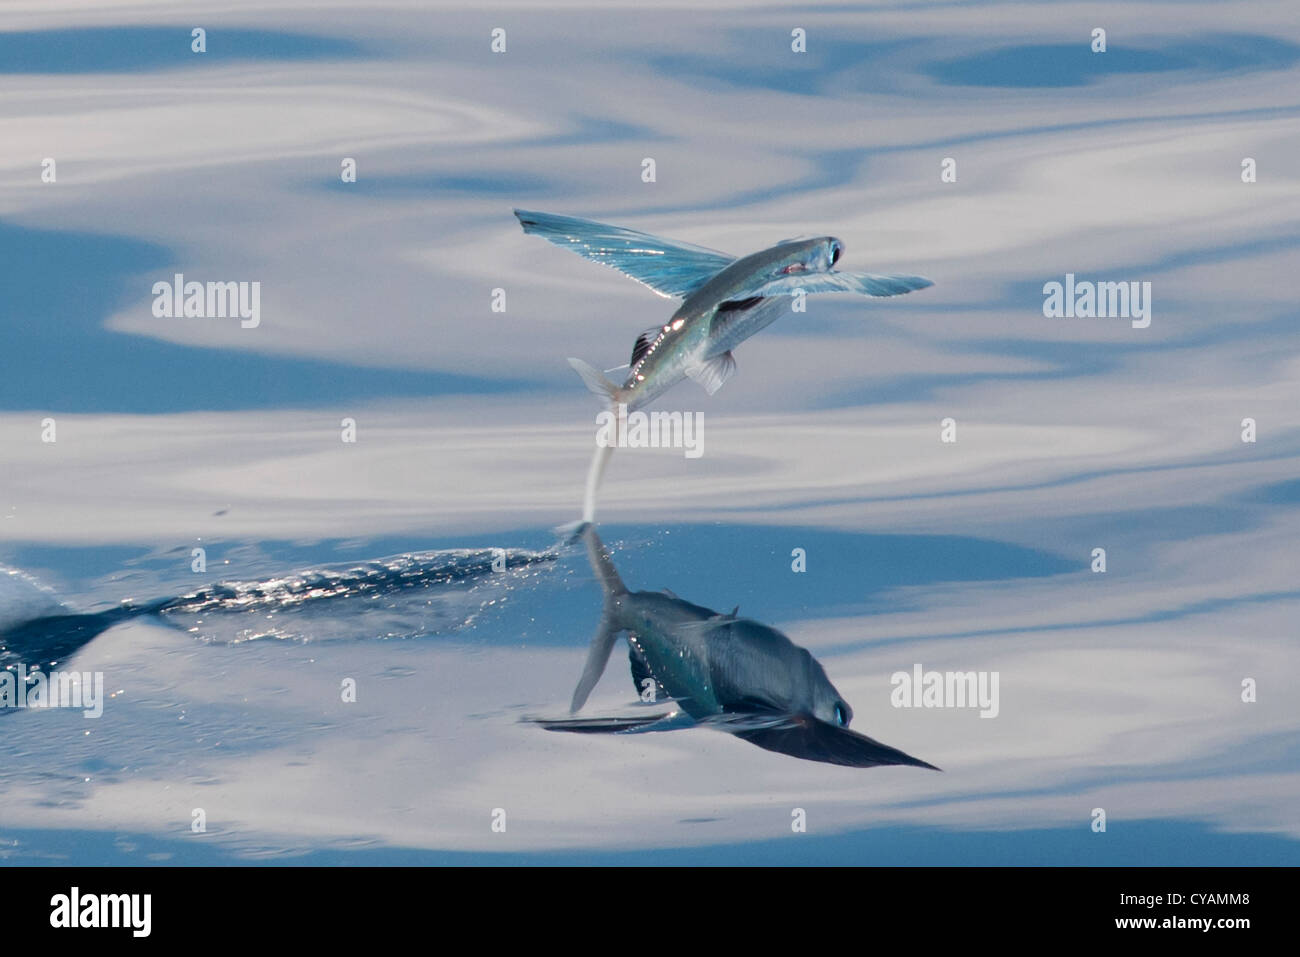 Les espèces de poissons volants (nom scientifique inconnu) avec reflet visible, décoller et laissant une trace sur l'eau. L'Océan indien Banque D'Images